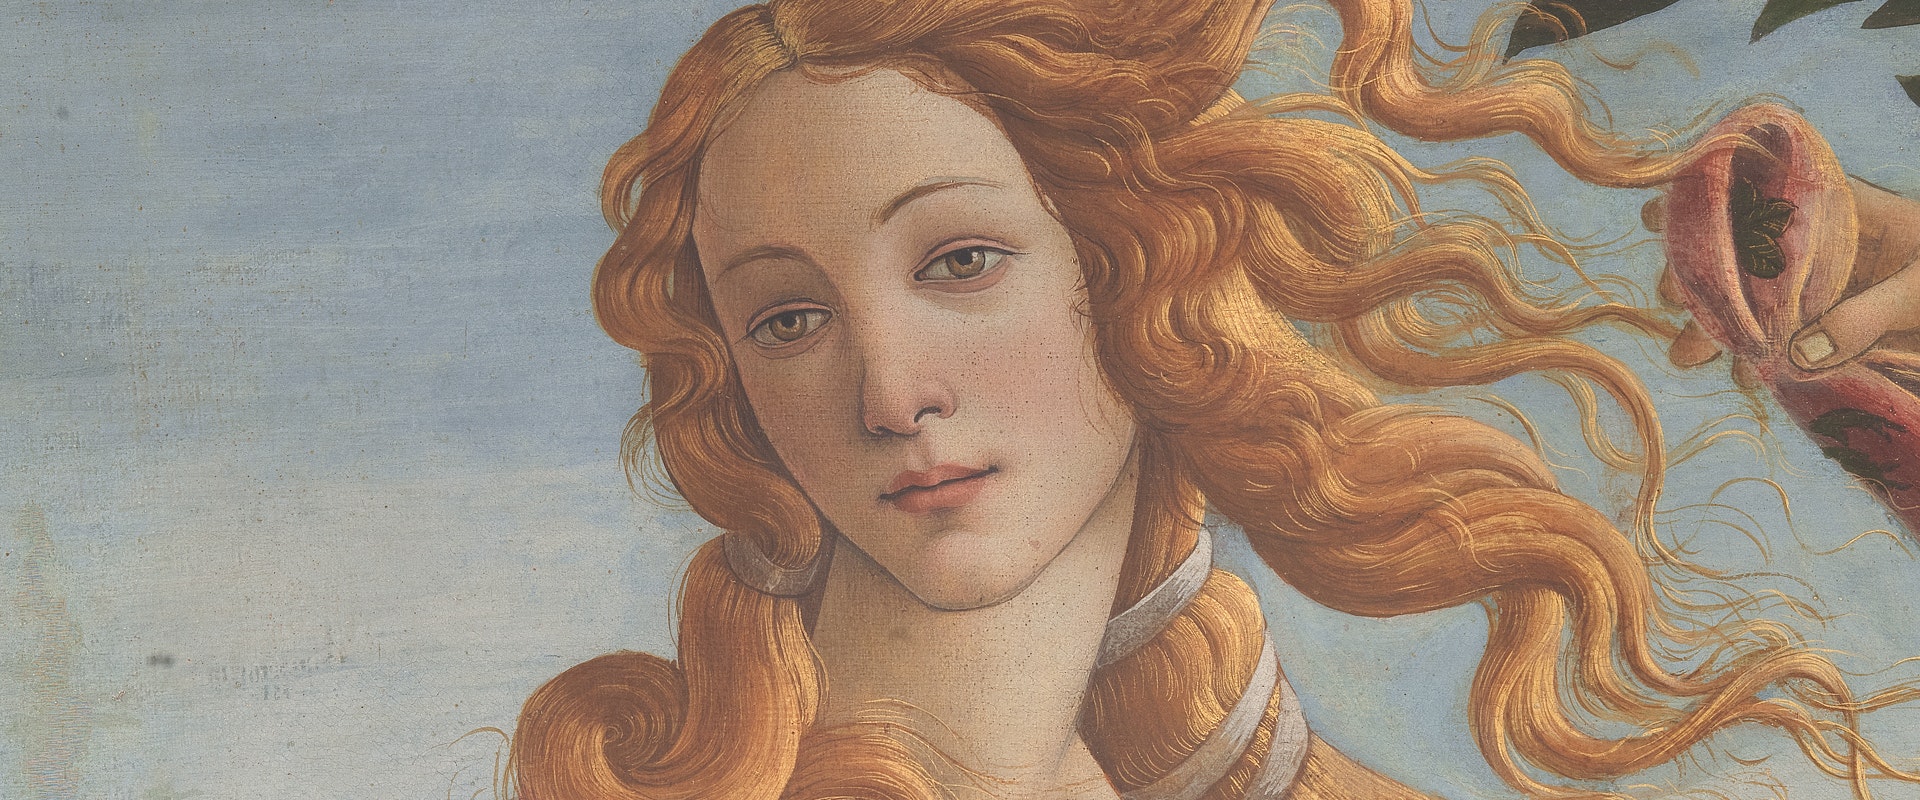 Particolare della Venere di Botticelli